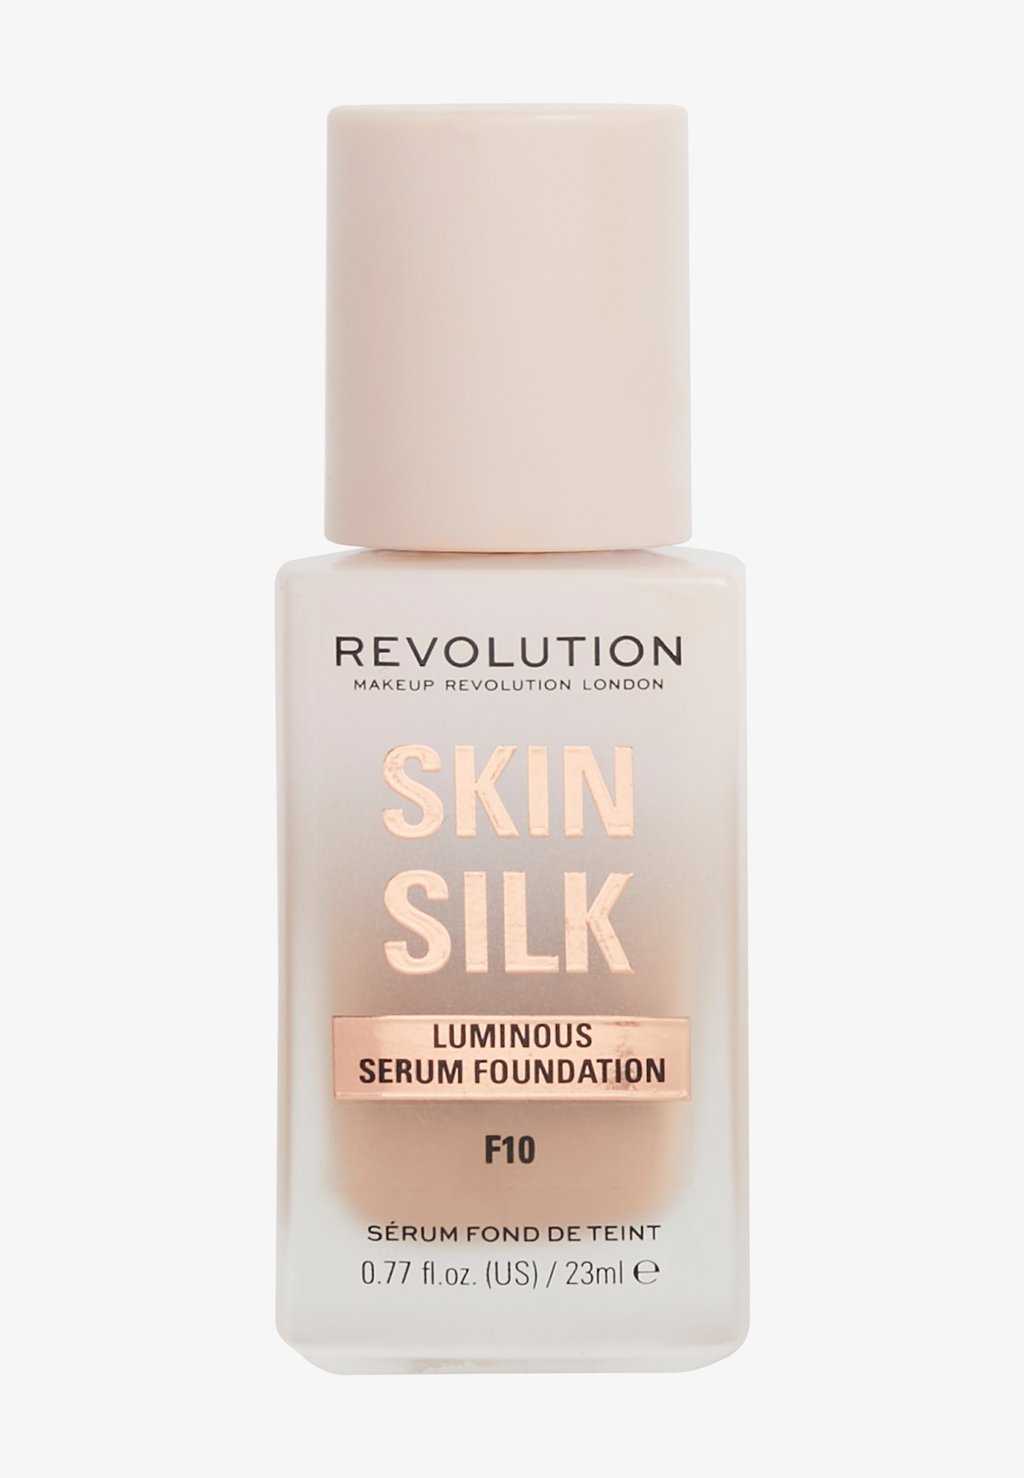 Тональный крем Revolution Skin Silk Serum Foundation Makeup Revolution, цвет f10